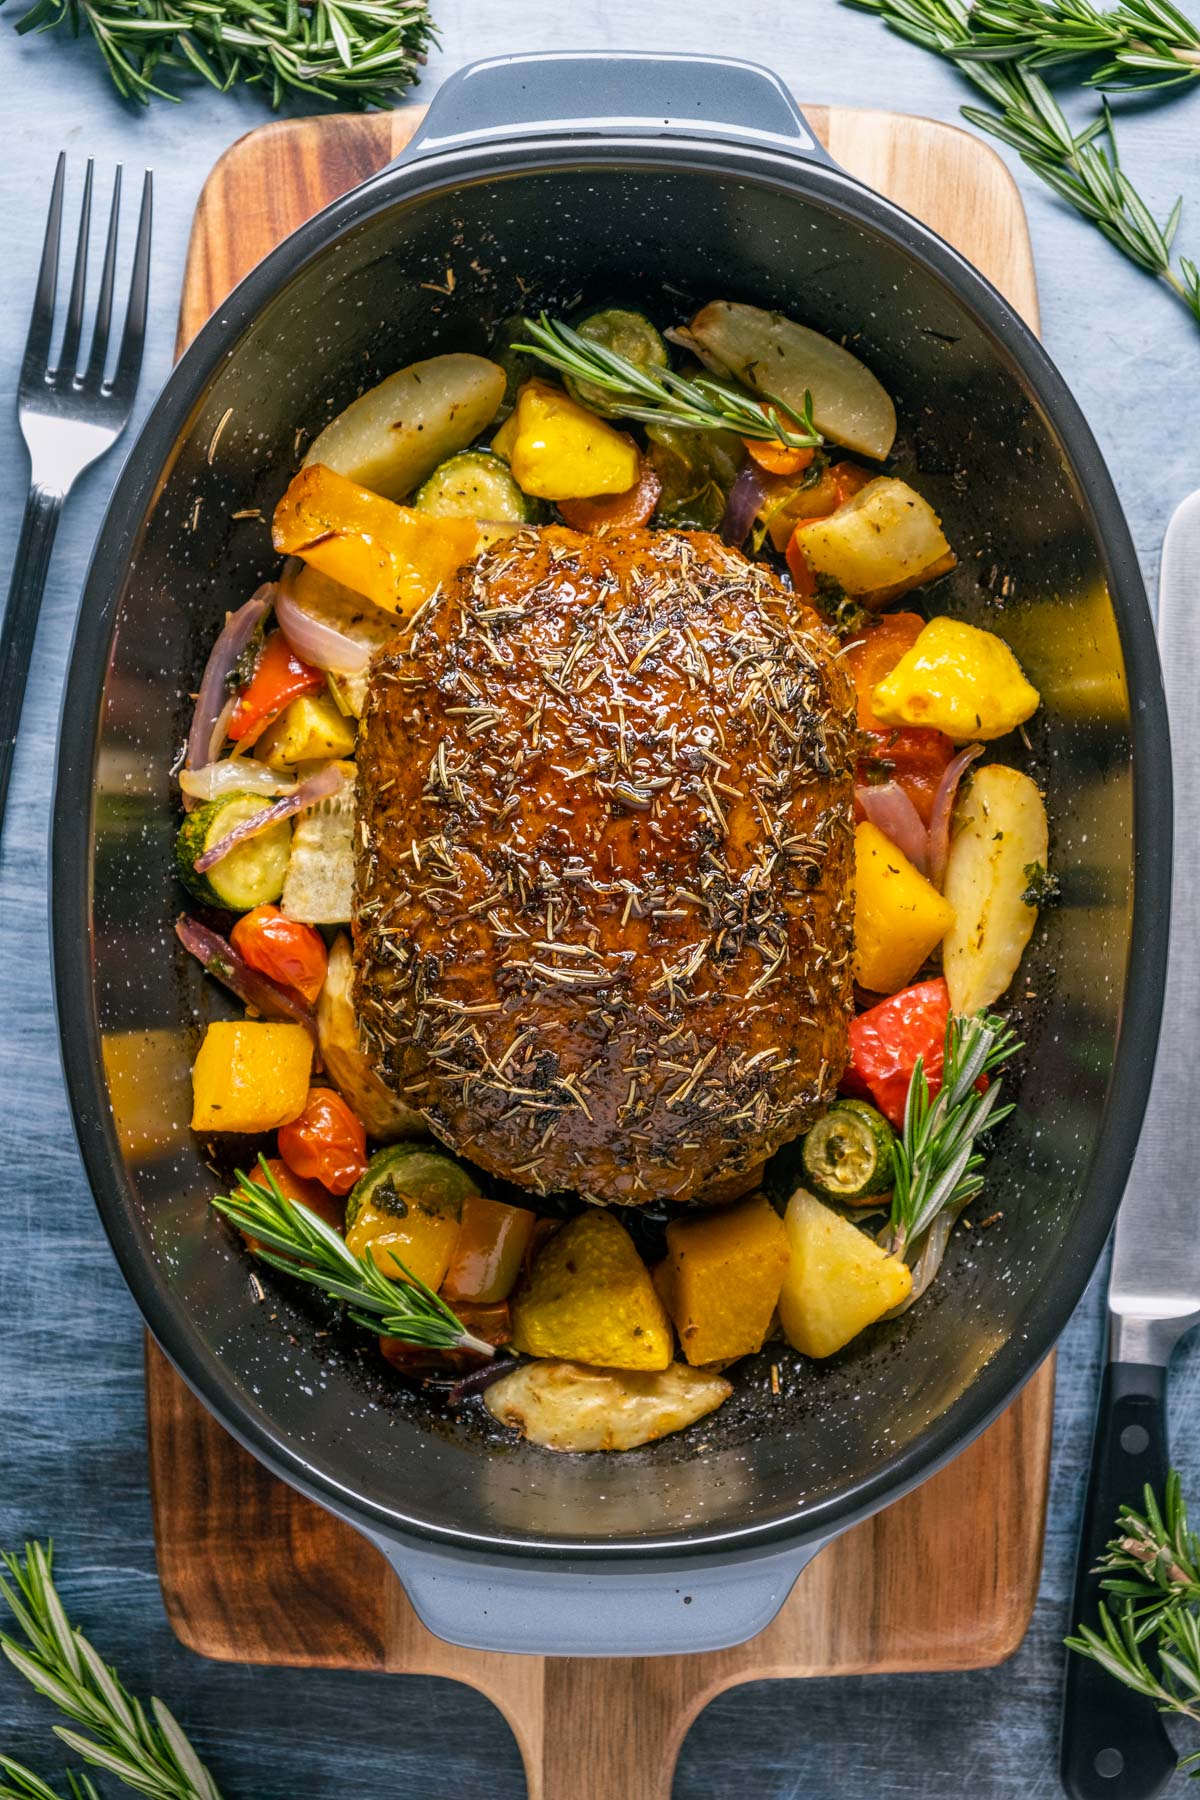 Vegan turkey roast with roasted vegetables in a roasting pan.